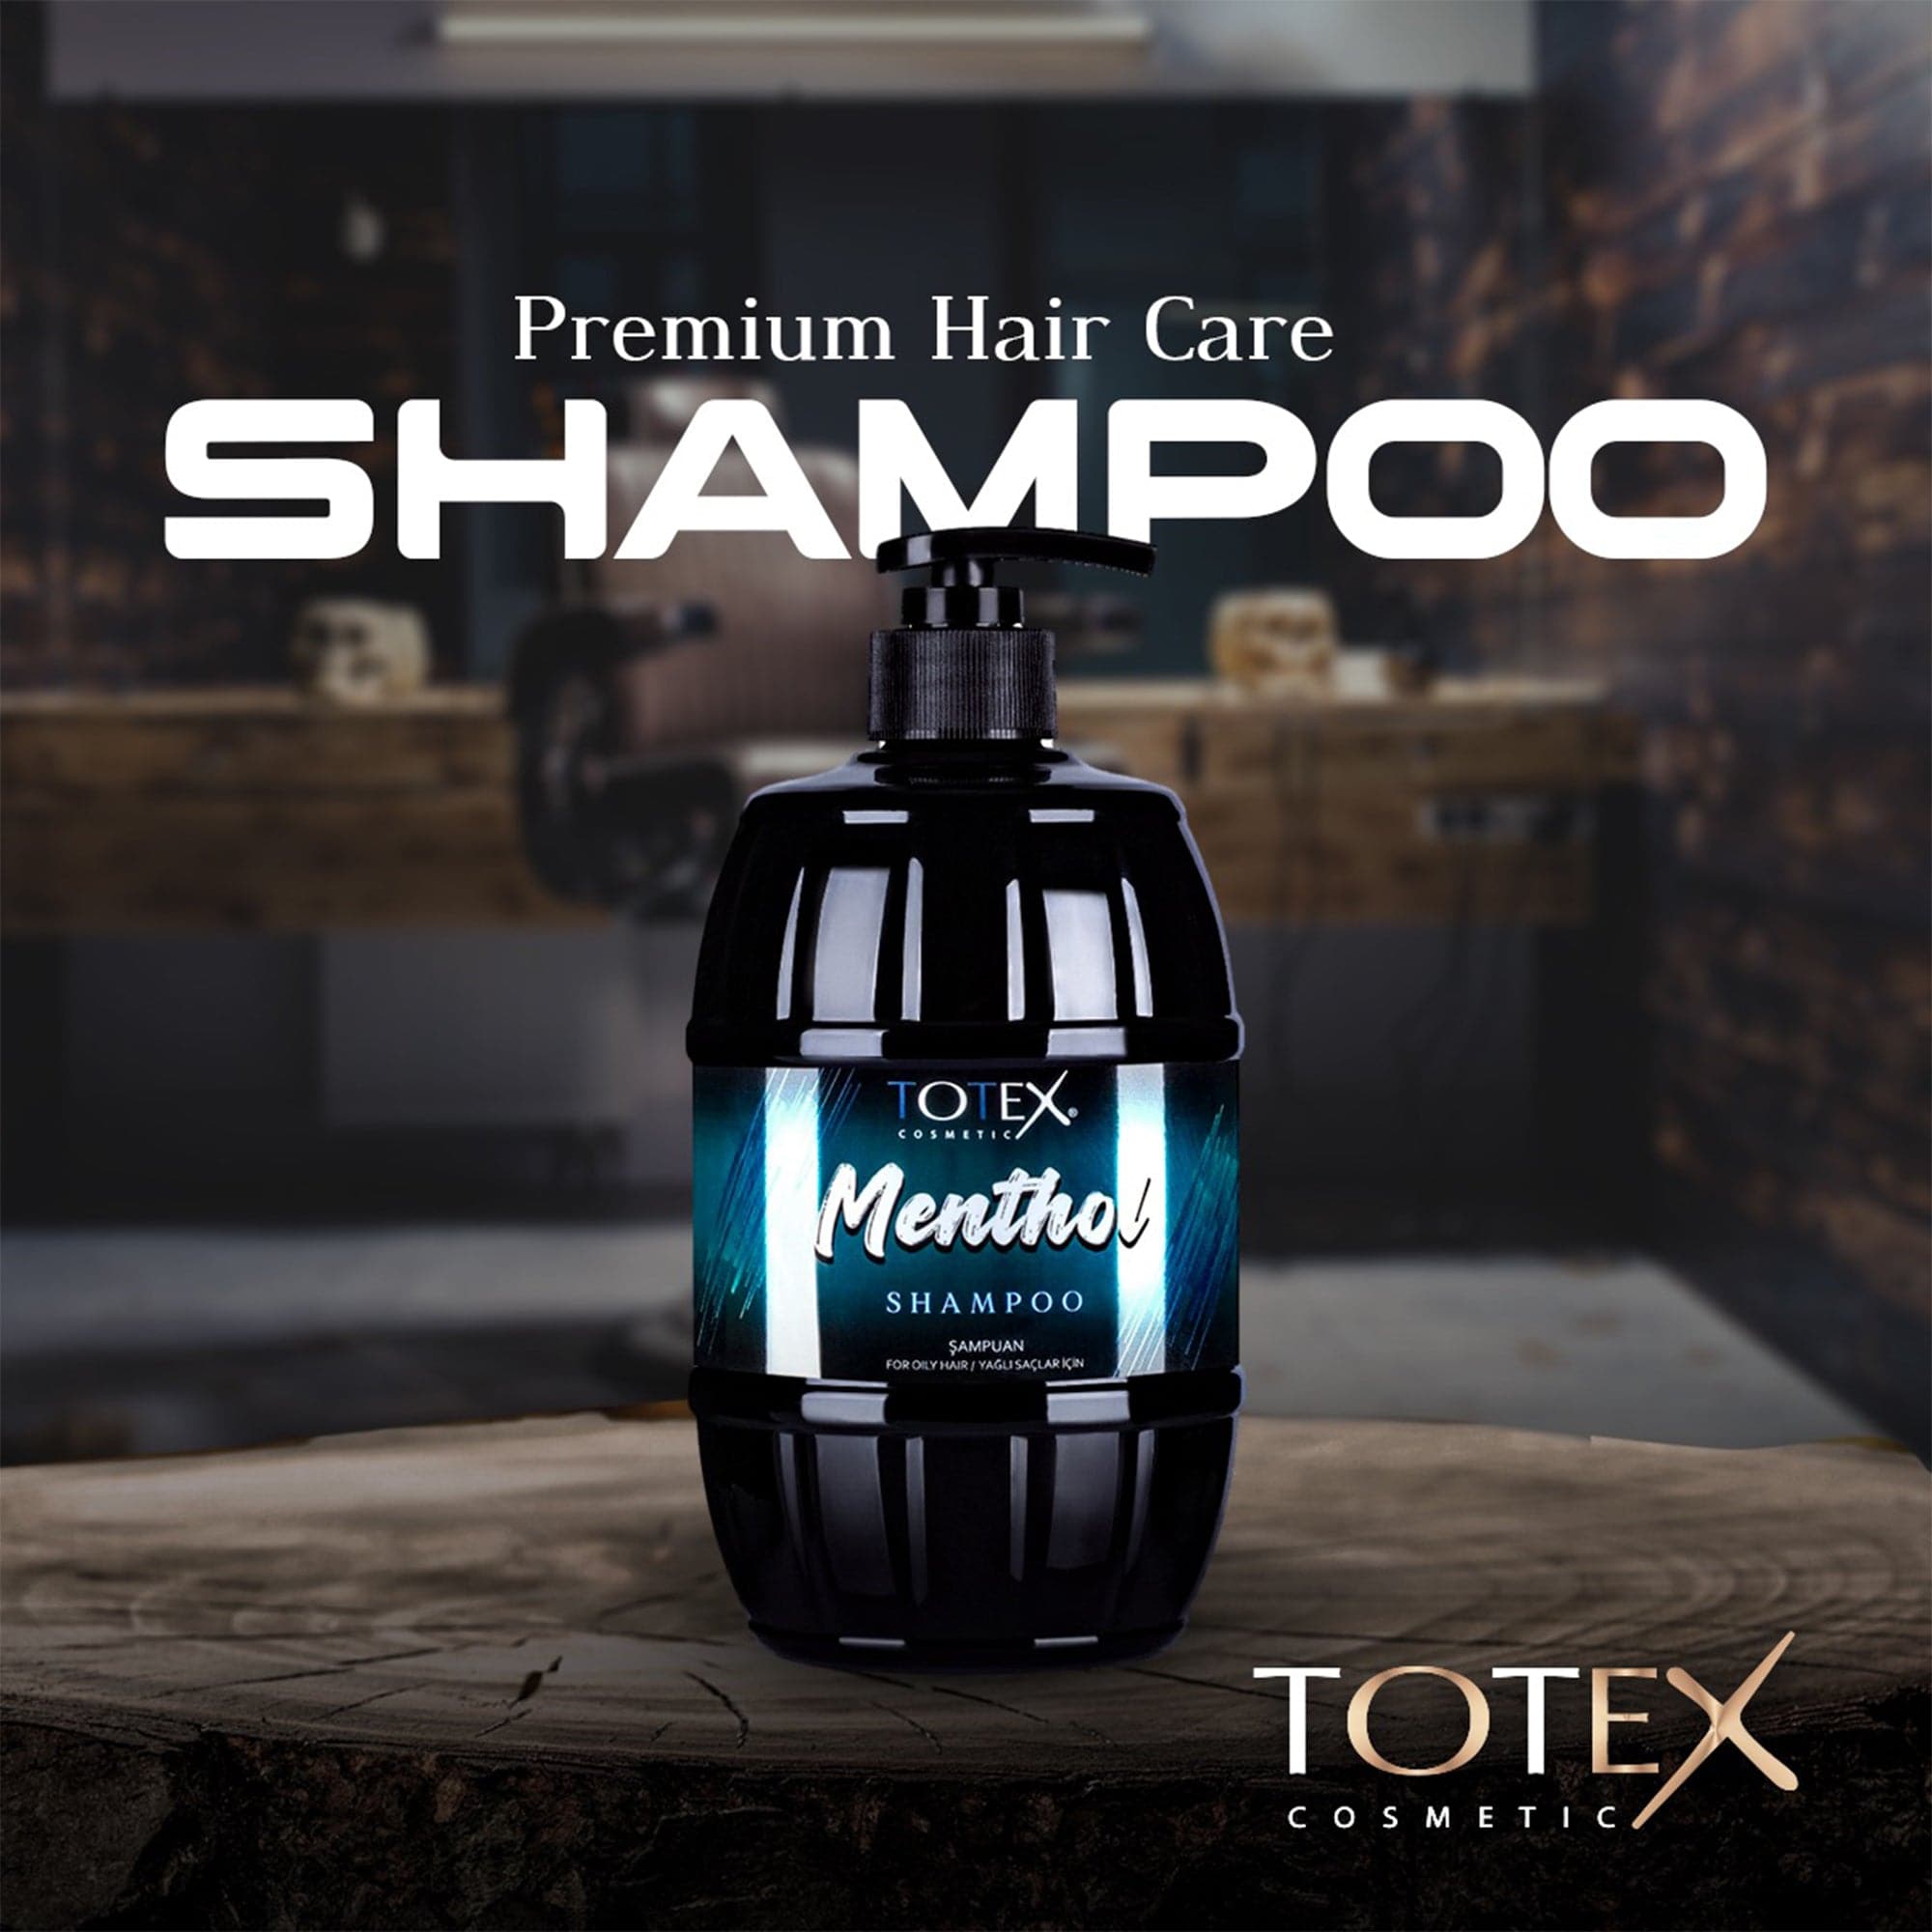 Totex - Shampoo Menthol 750ml